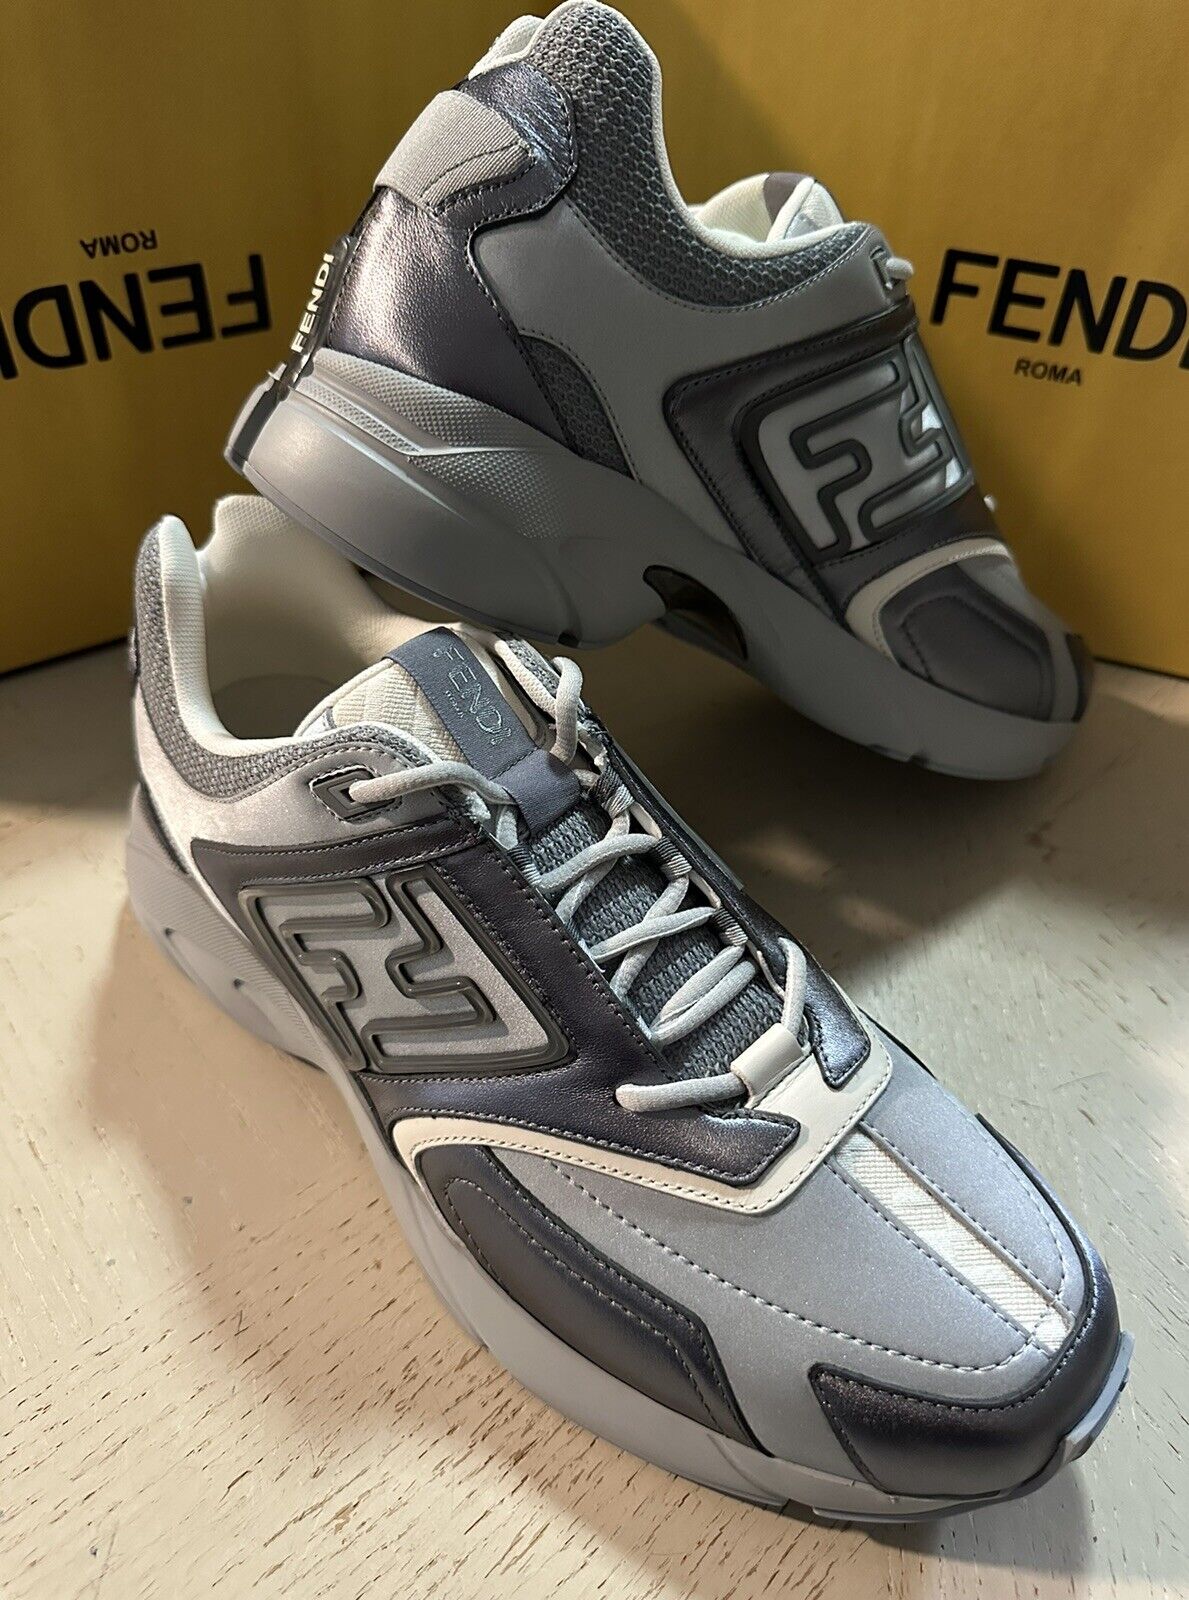 NIB Мужские кожаные спортивные кроссовки Fendi FF с логотипом за 1200 долларов США, серый/серебристый 11 США/10 Великобритания